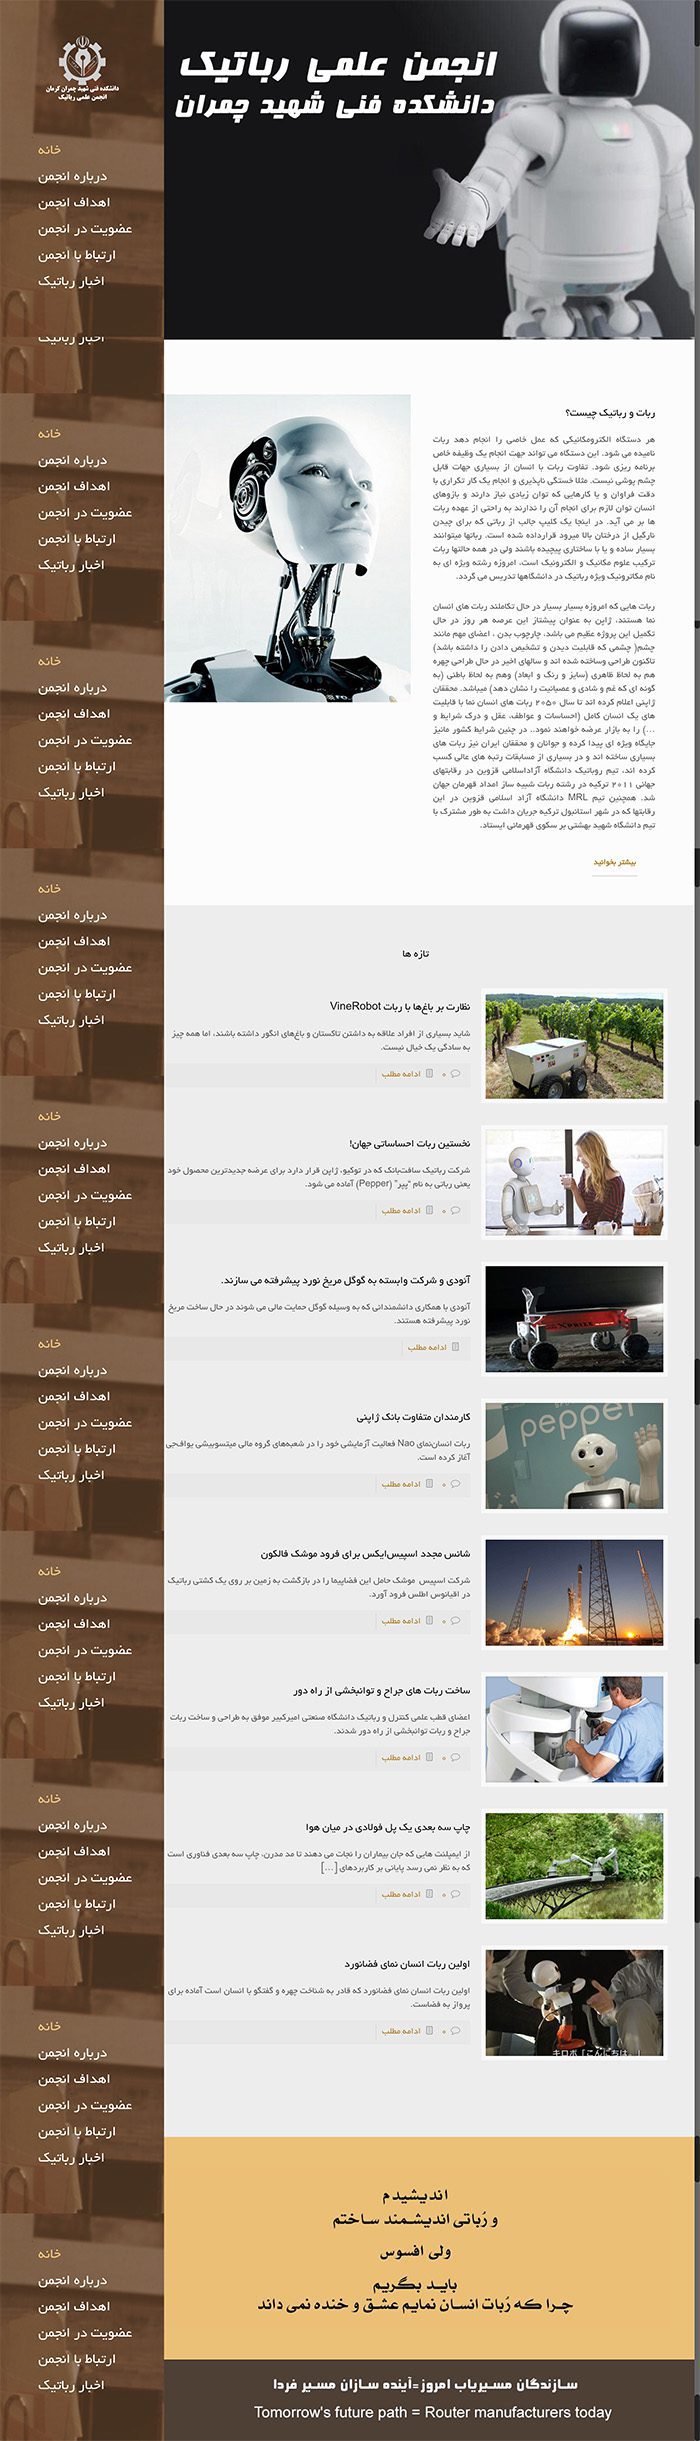 طراحی سایت انجمن رباتیک دانشگاه چمران توسط شرکت طراحی سایت سورنا در کرمان